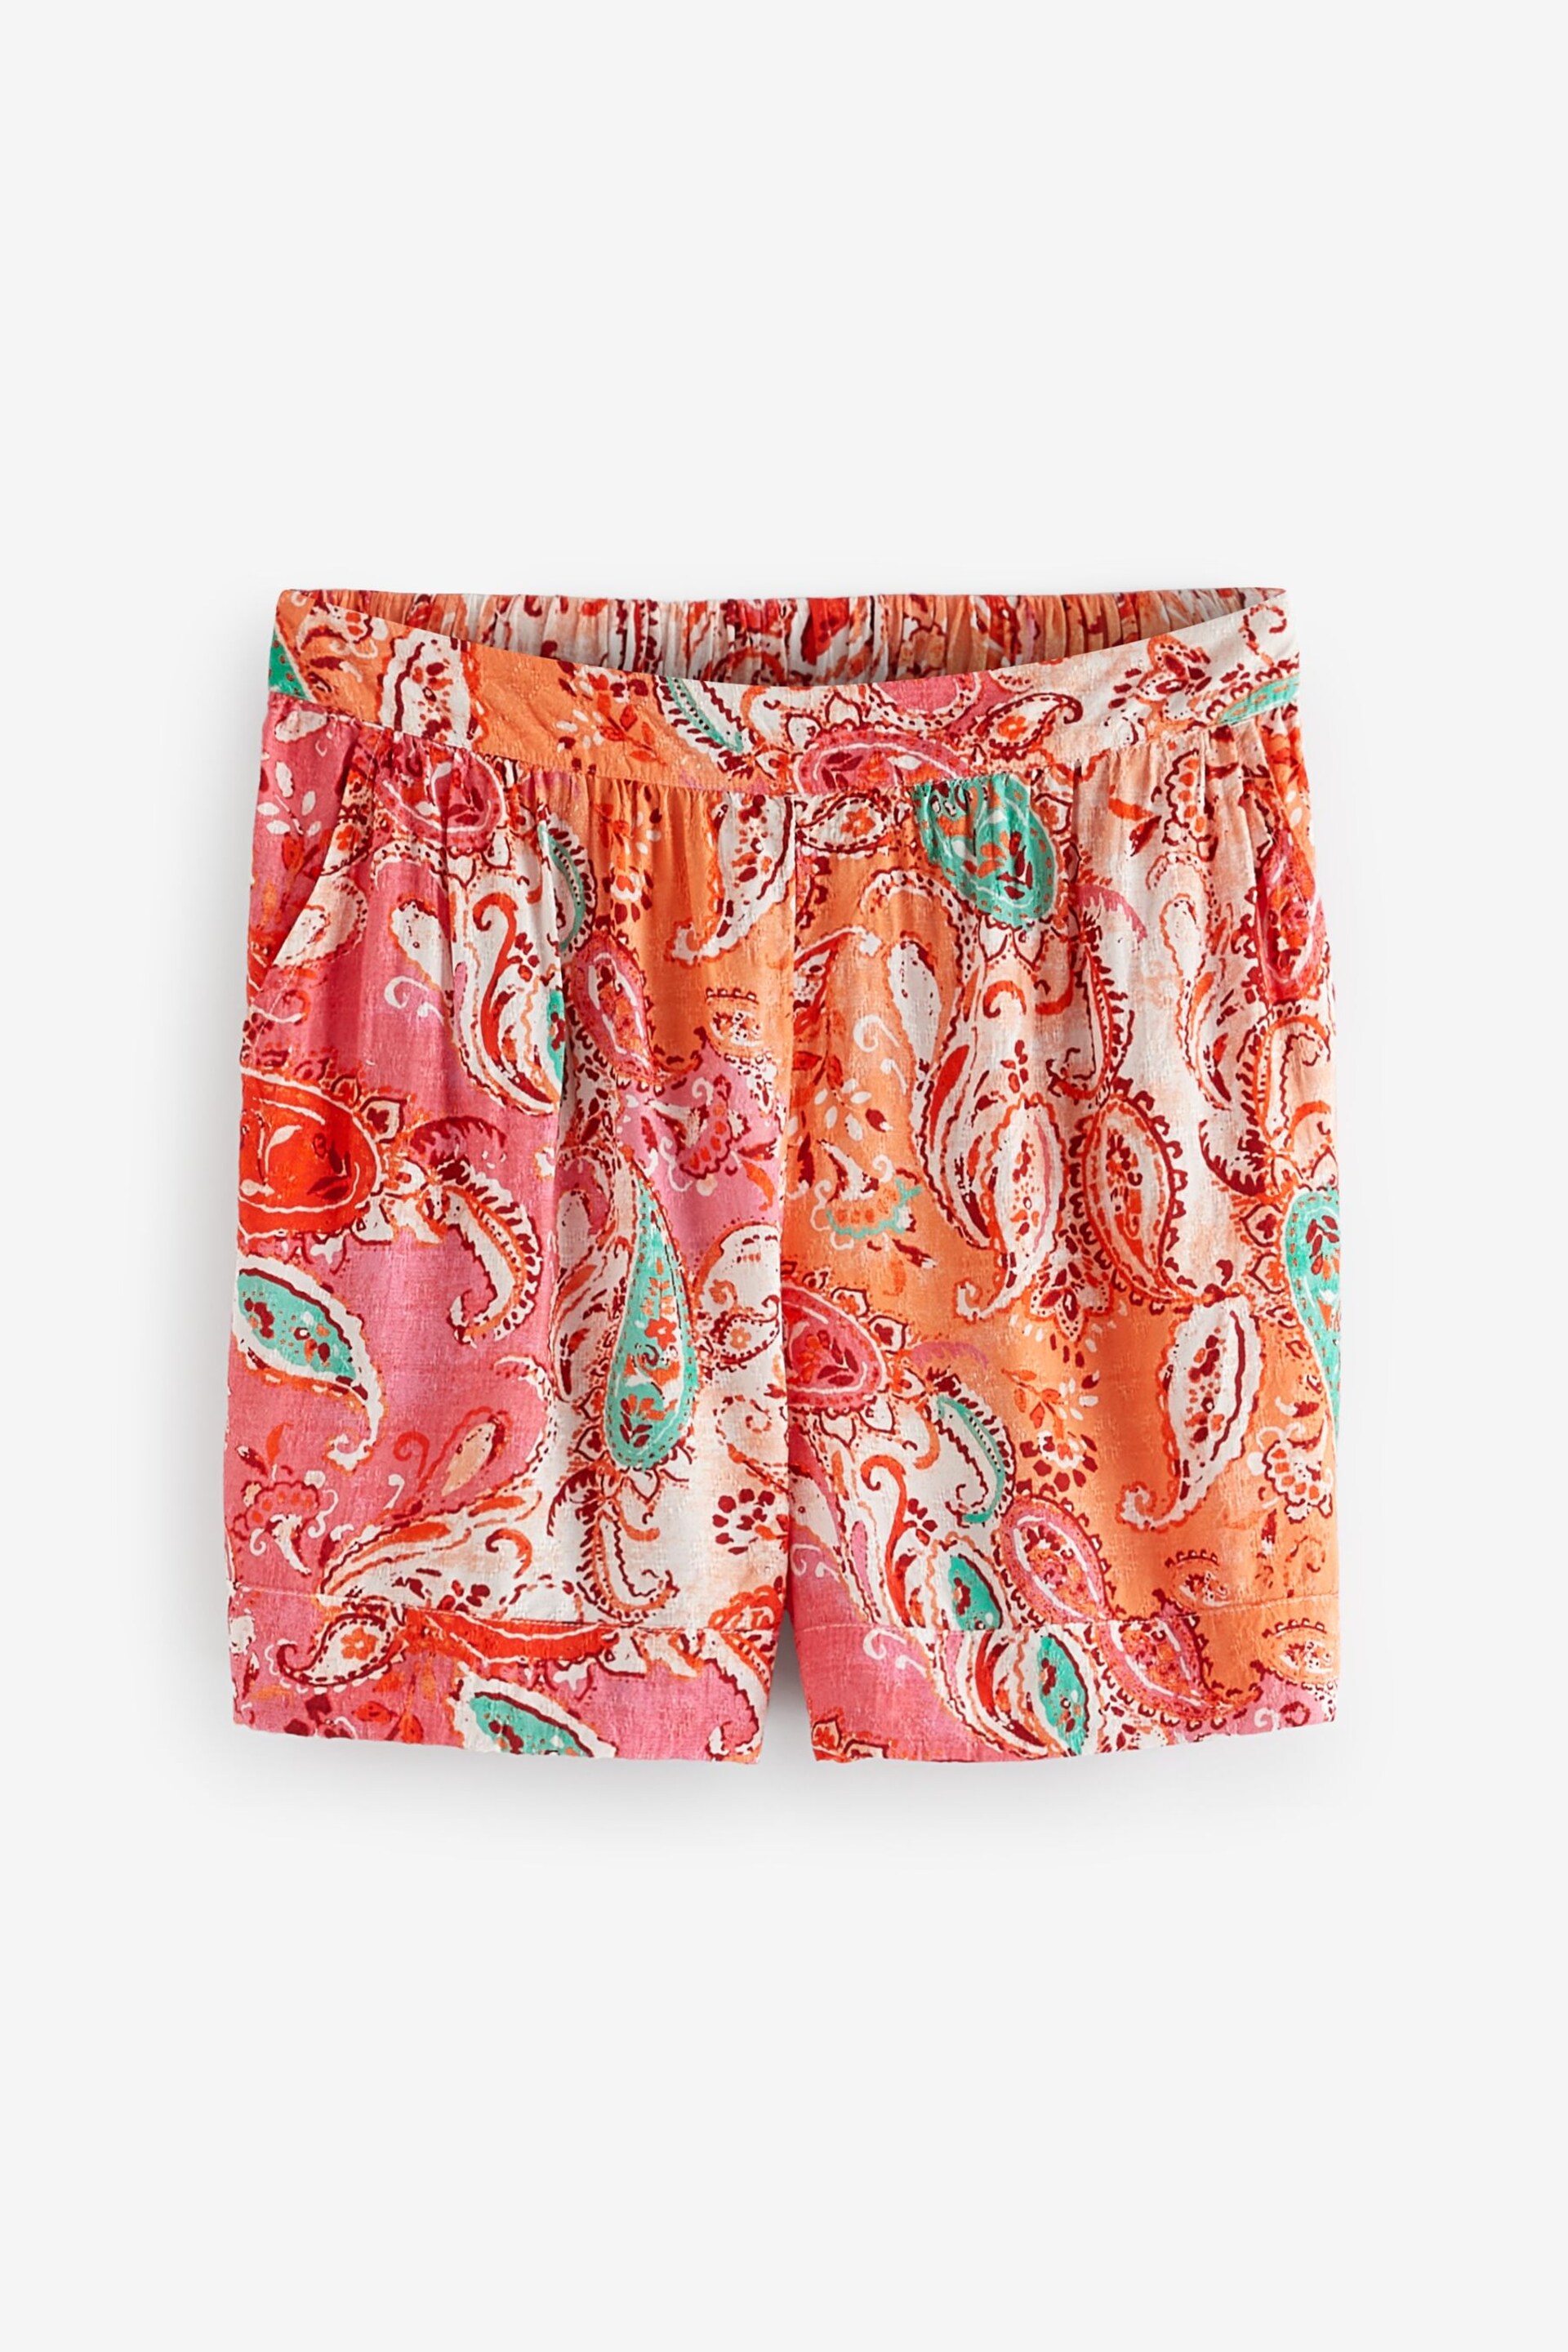 Orange/Pink Pull-On Shorts - Image 5 of 6